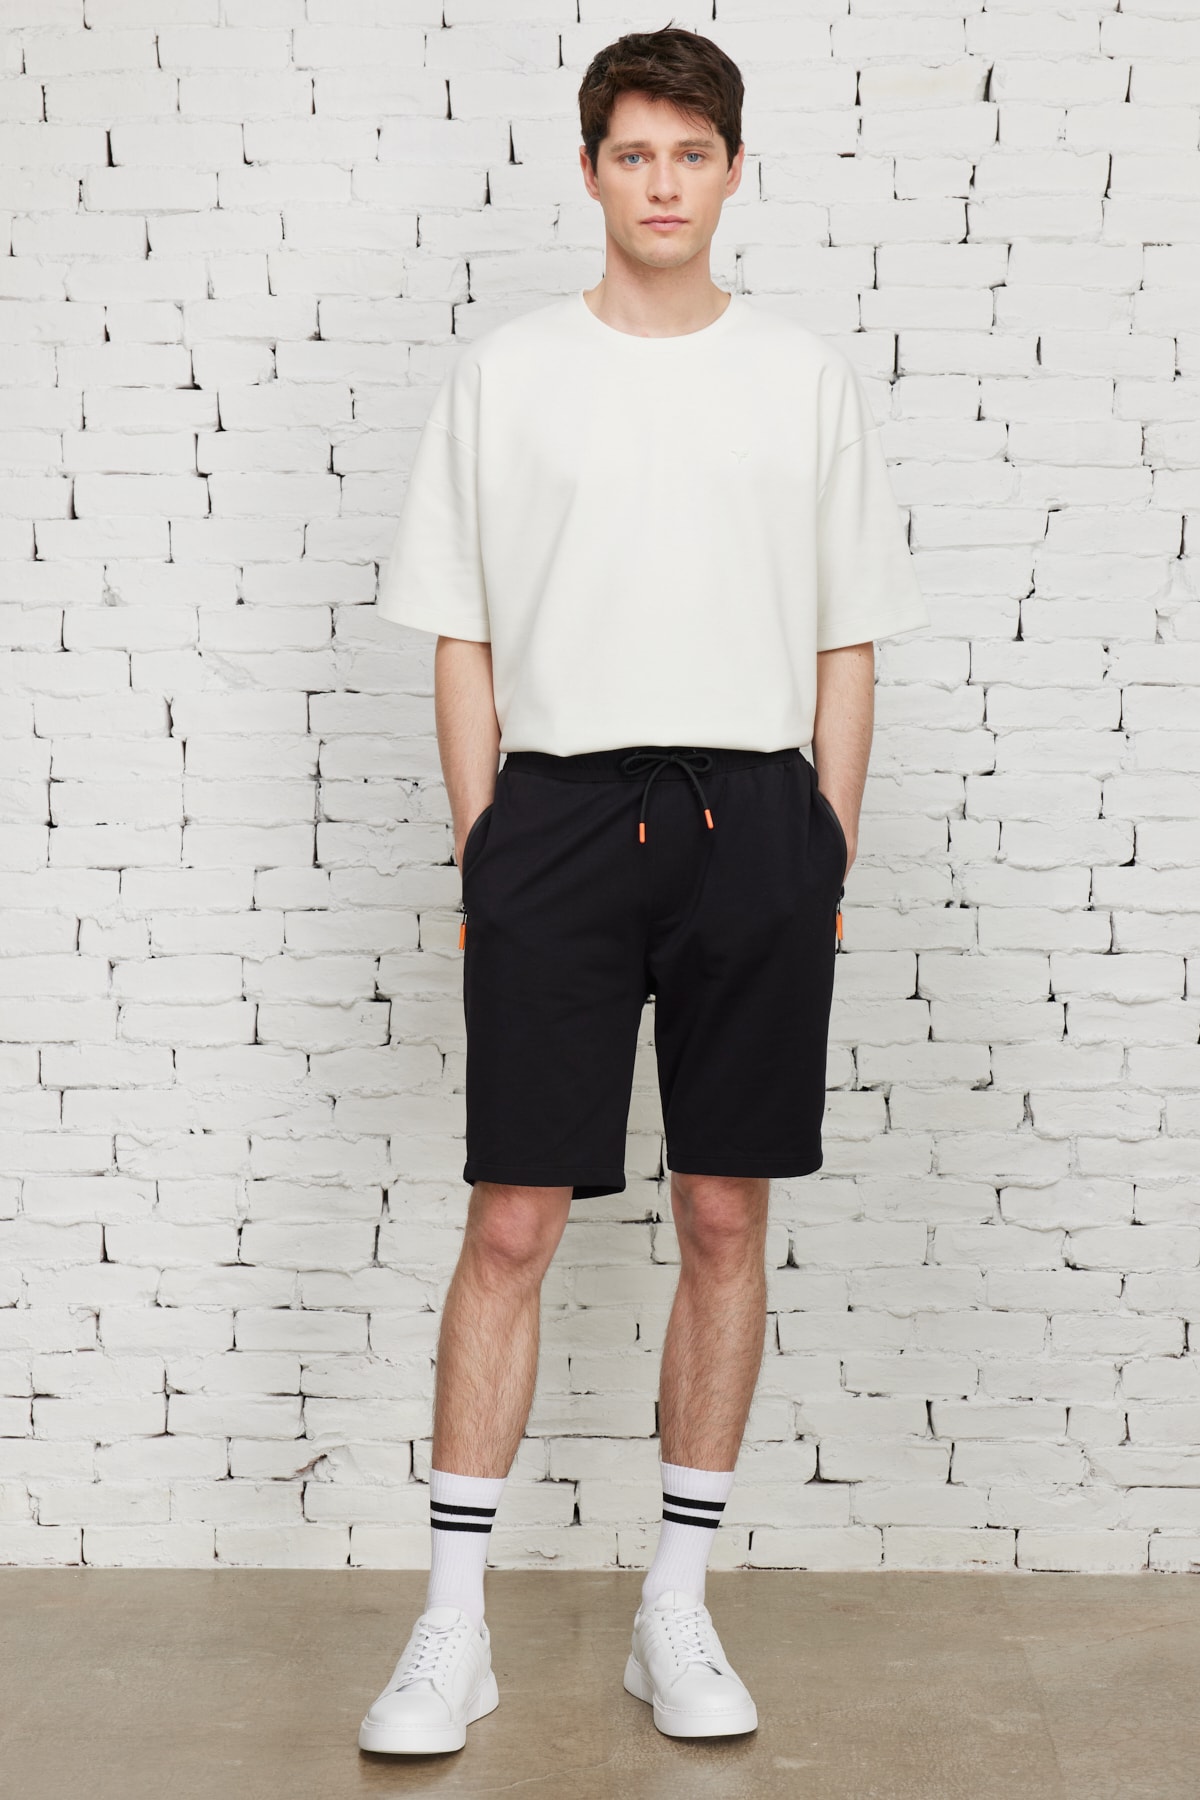 ALTINYILDIZ CLASSICS Men's Black Standard Fit Normal Cut Cotton Shorts with Pocket.